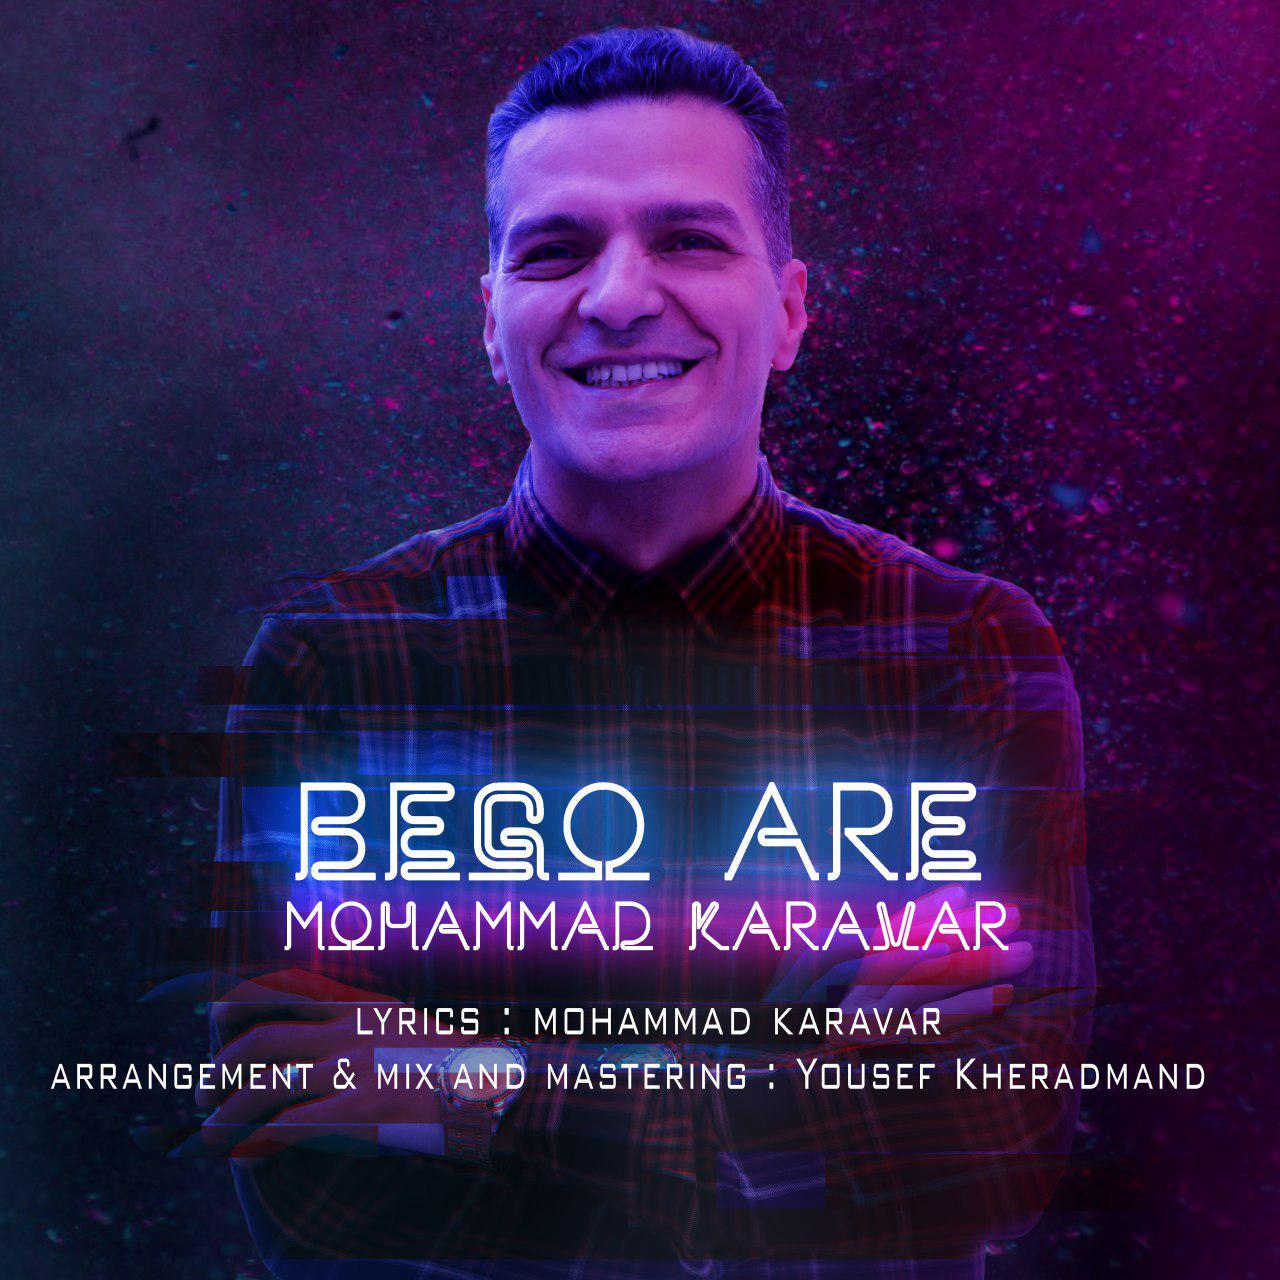  دانلود آهنگ جدید محمد کارآور - بگو آره | Download New Music By Mohammad Karavar - Bego Are